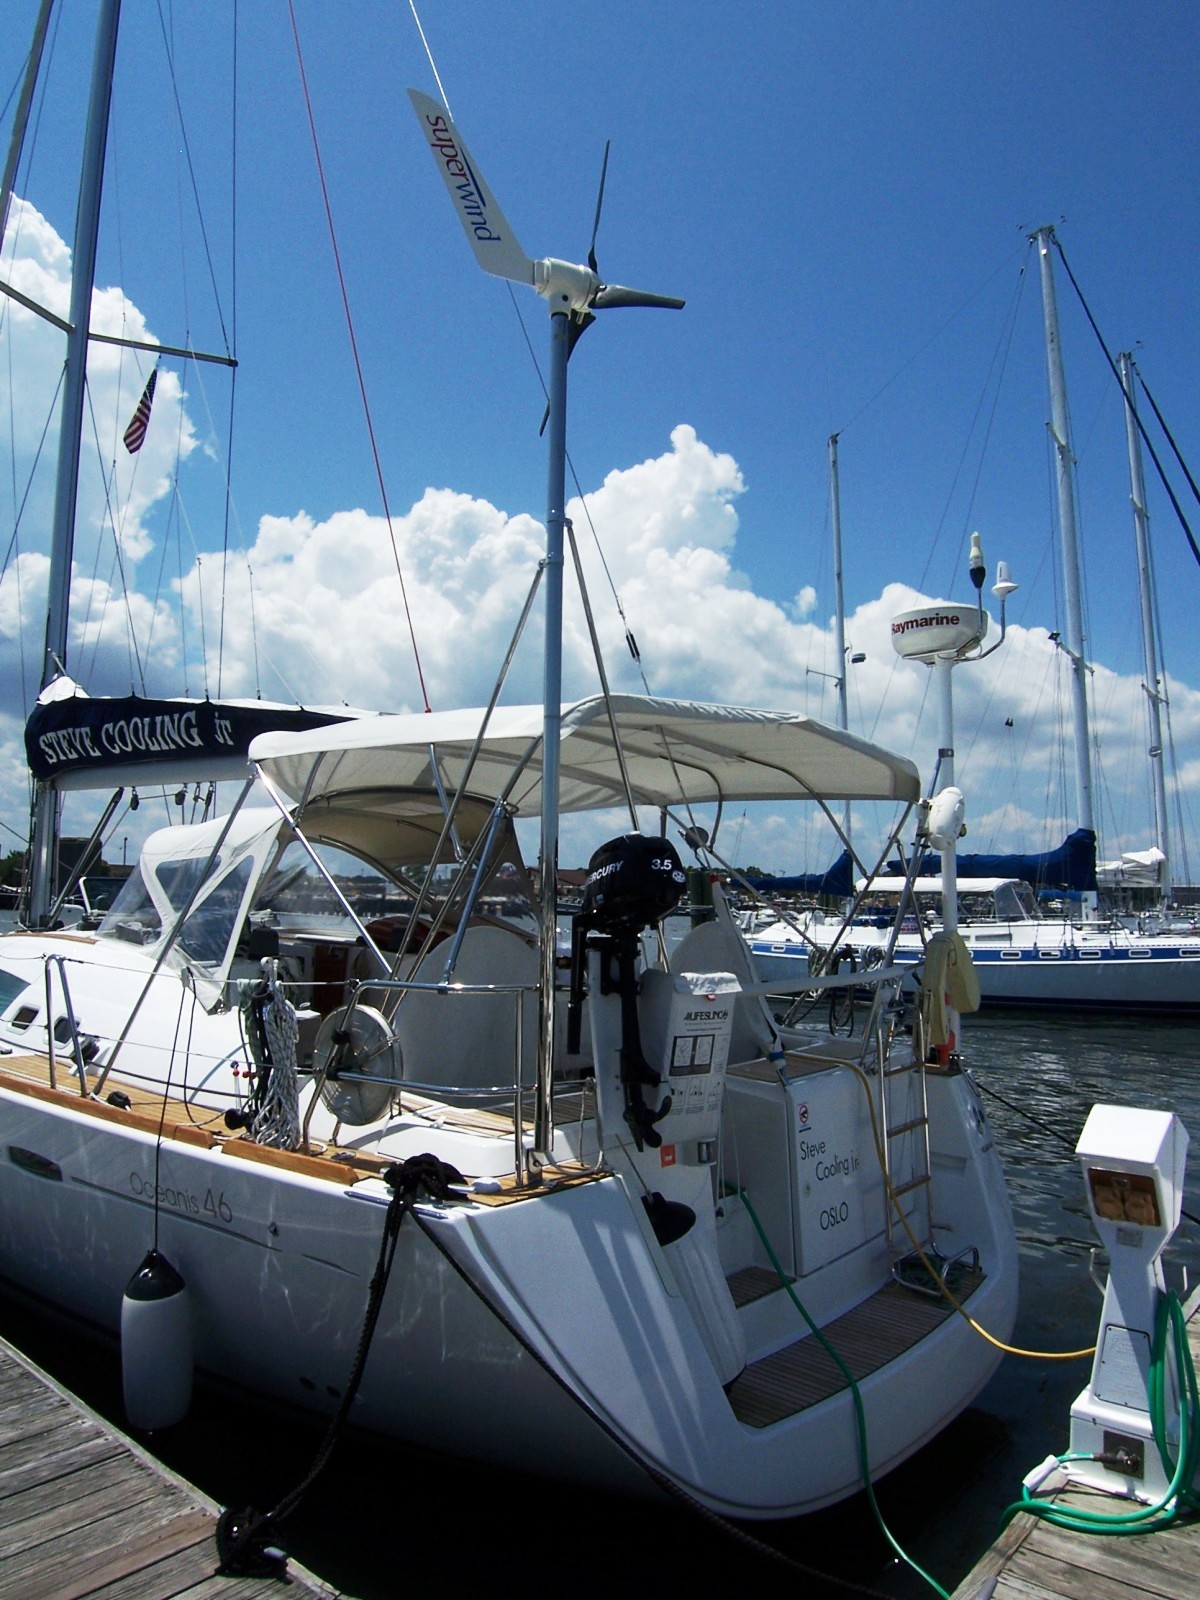 Klacko Superwind Mast kit on Beneteau Oceanis 46